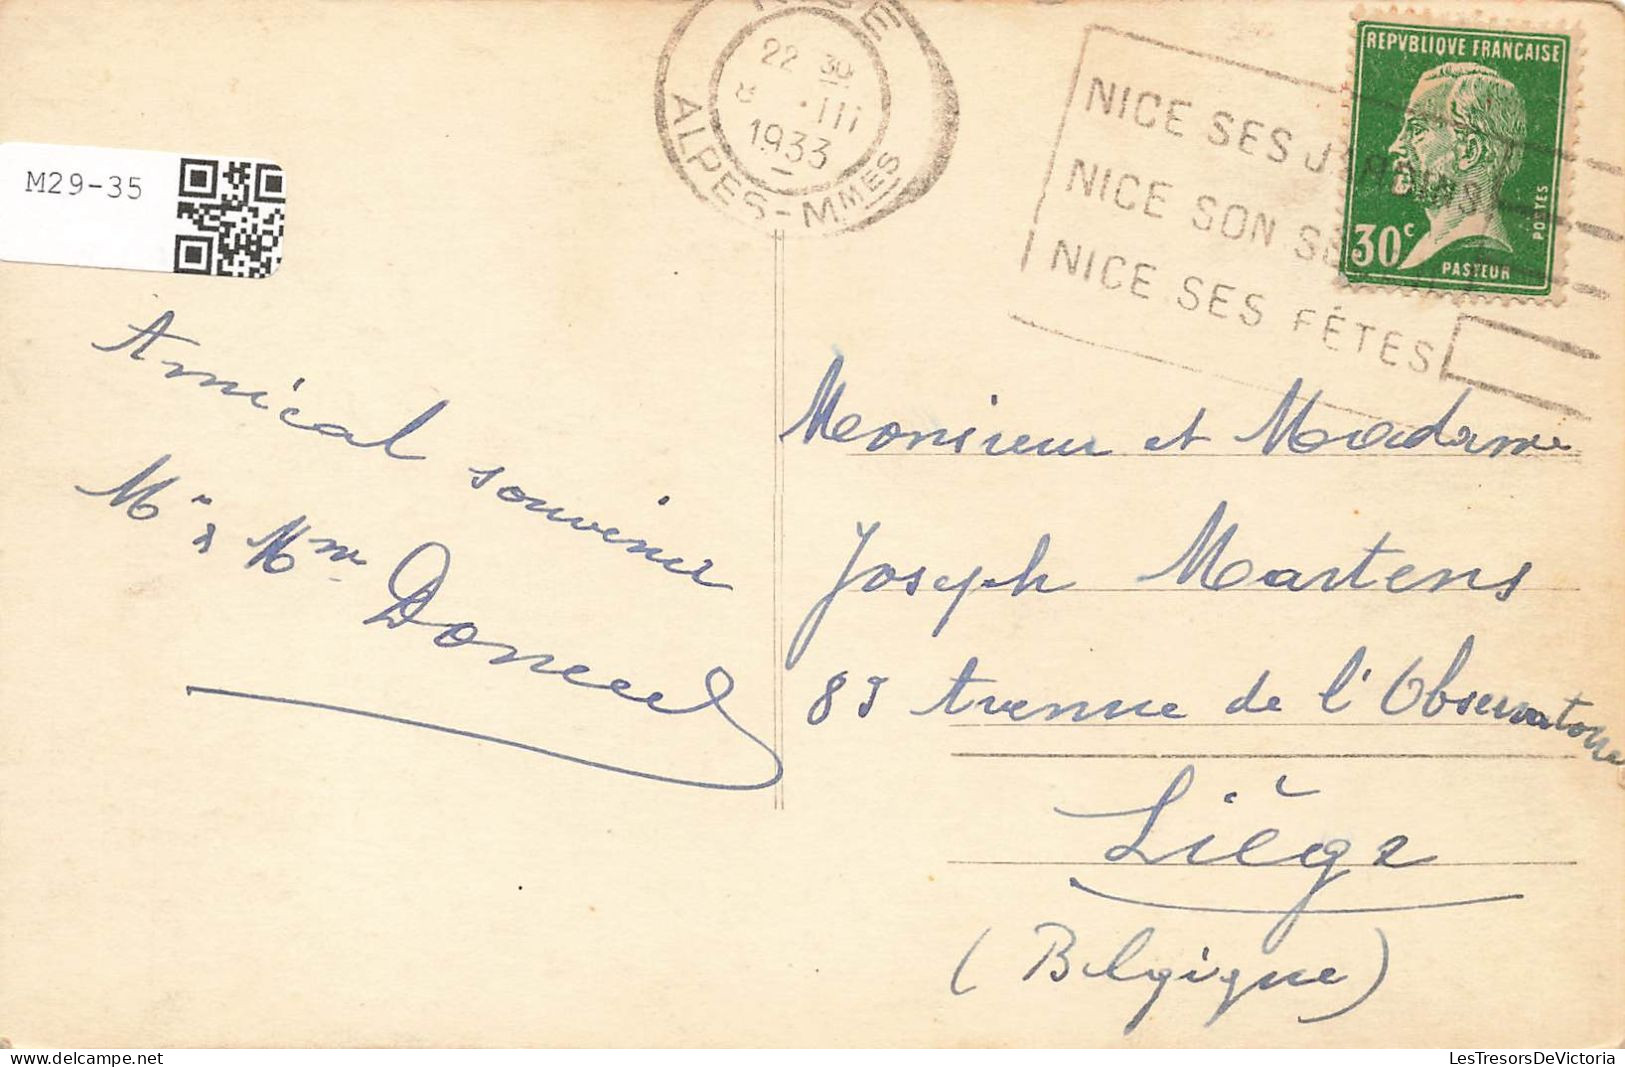 FRANCE - Nice - Palais De La Méditérranée - (M Ch Dalmas, Arch) - Animé - Carte Postale - Monumenten, Gebouwen